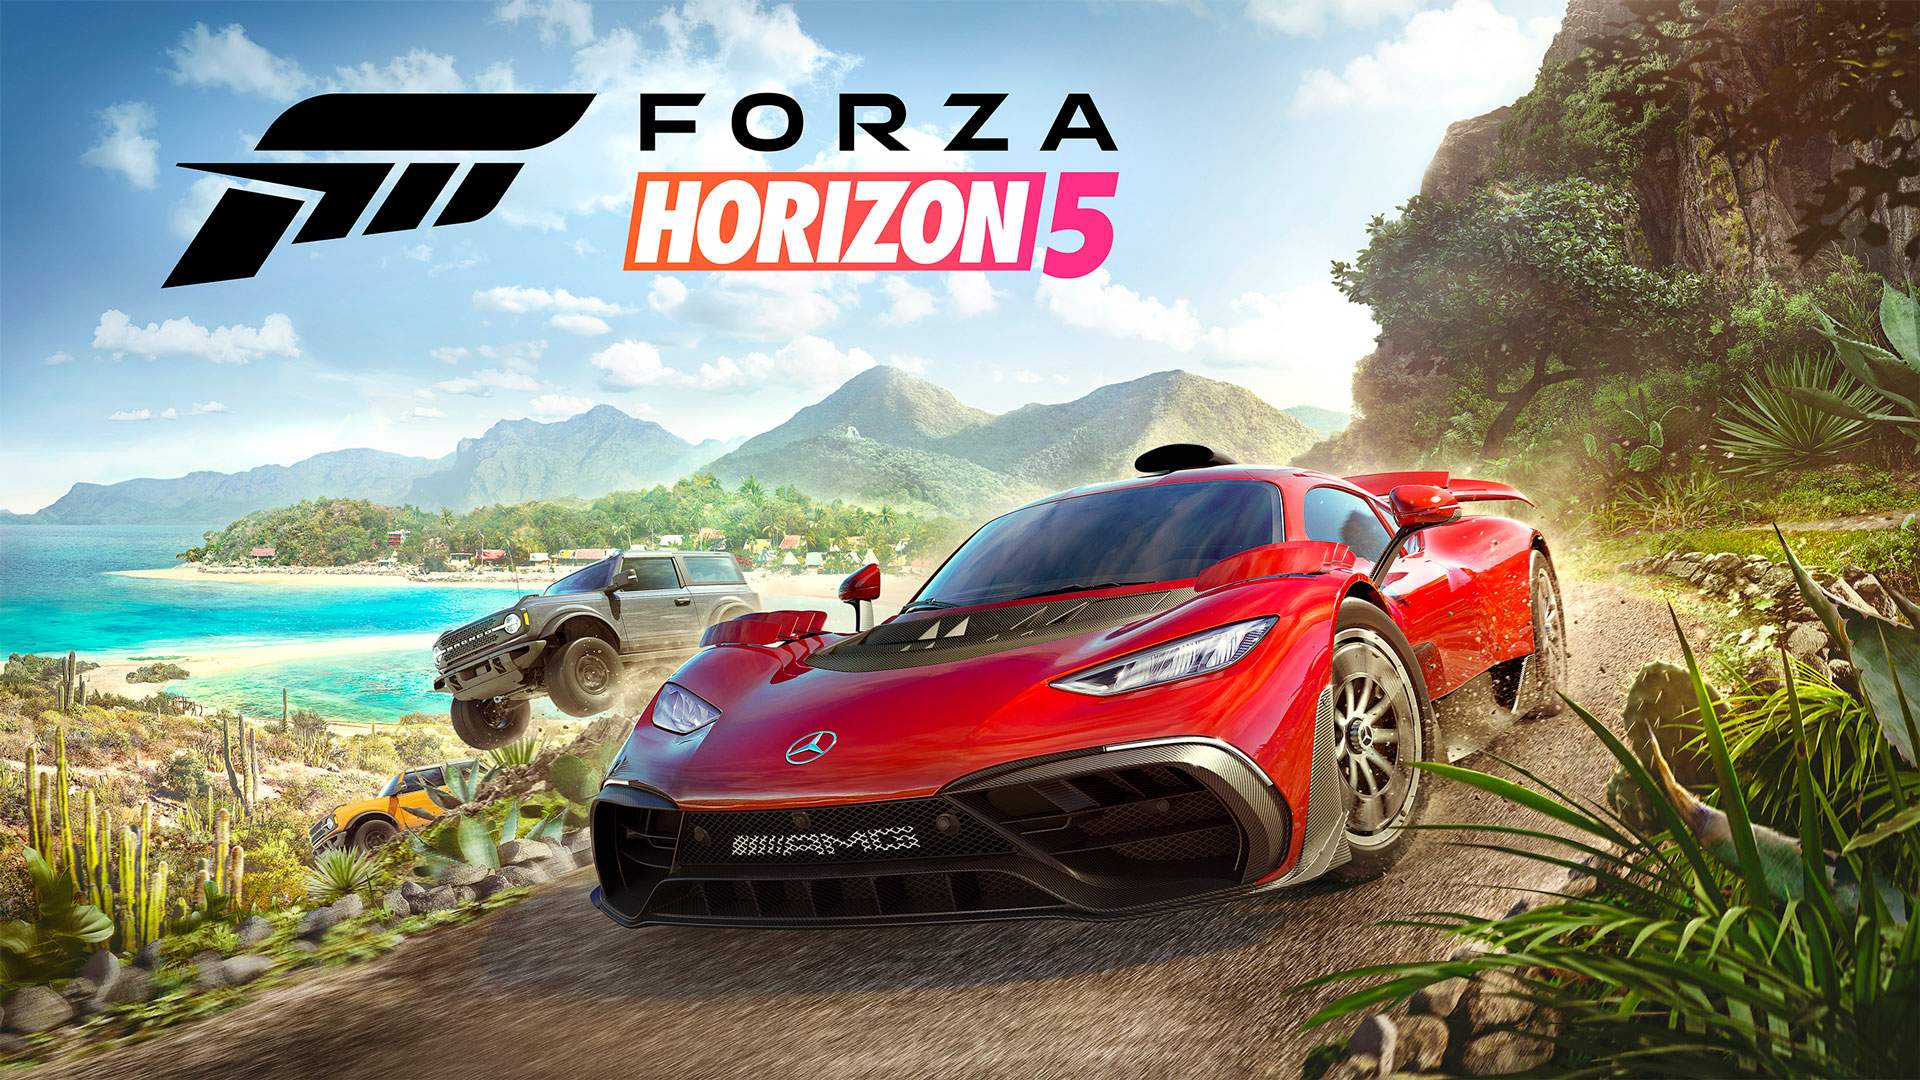 Работу Forza Horizon 5 показали на портативной консоли Steam Deck